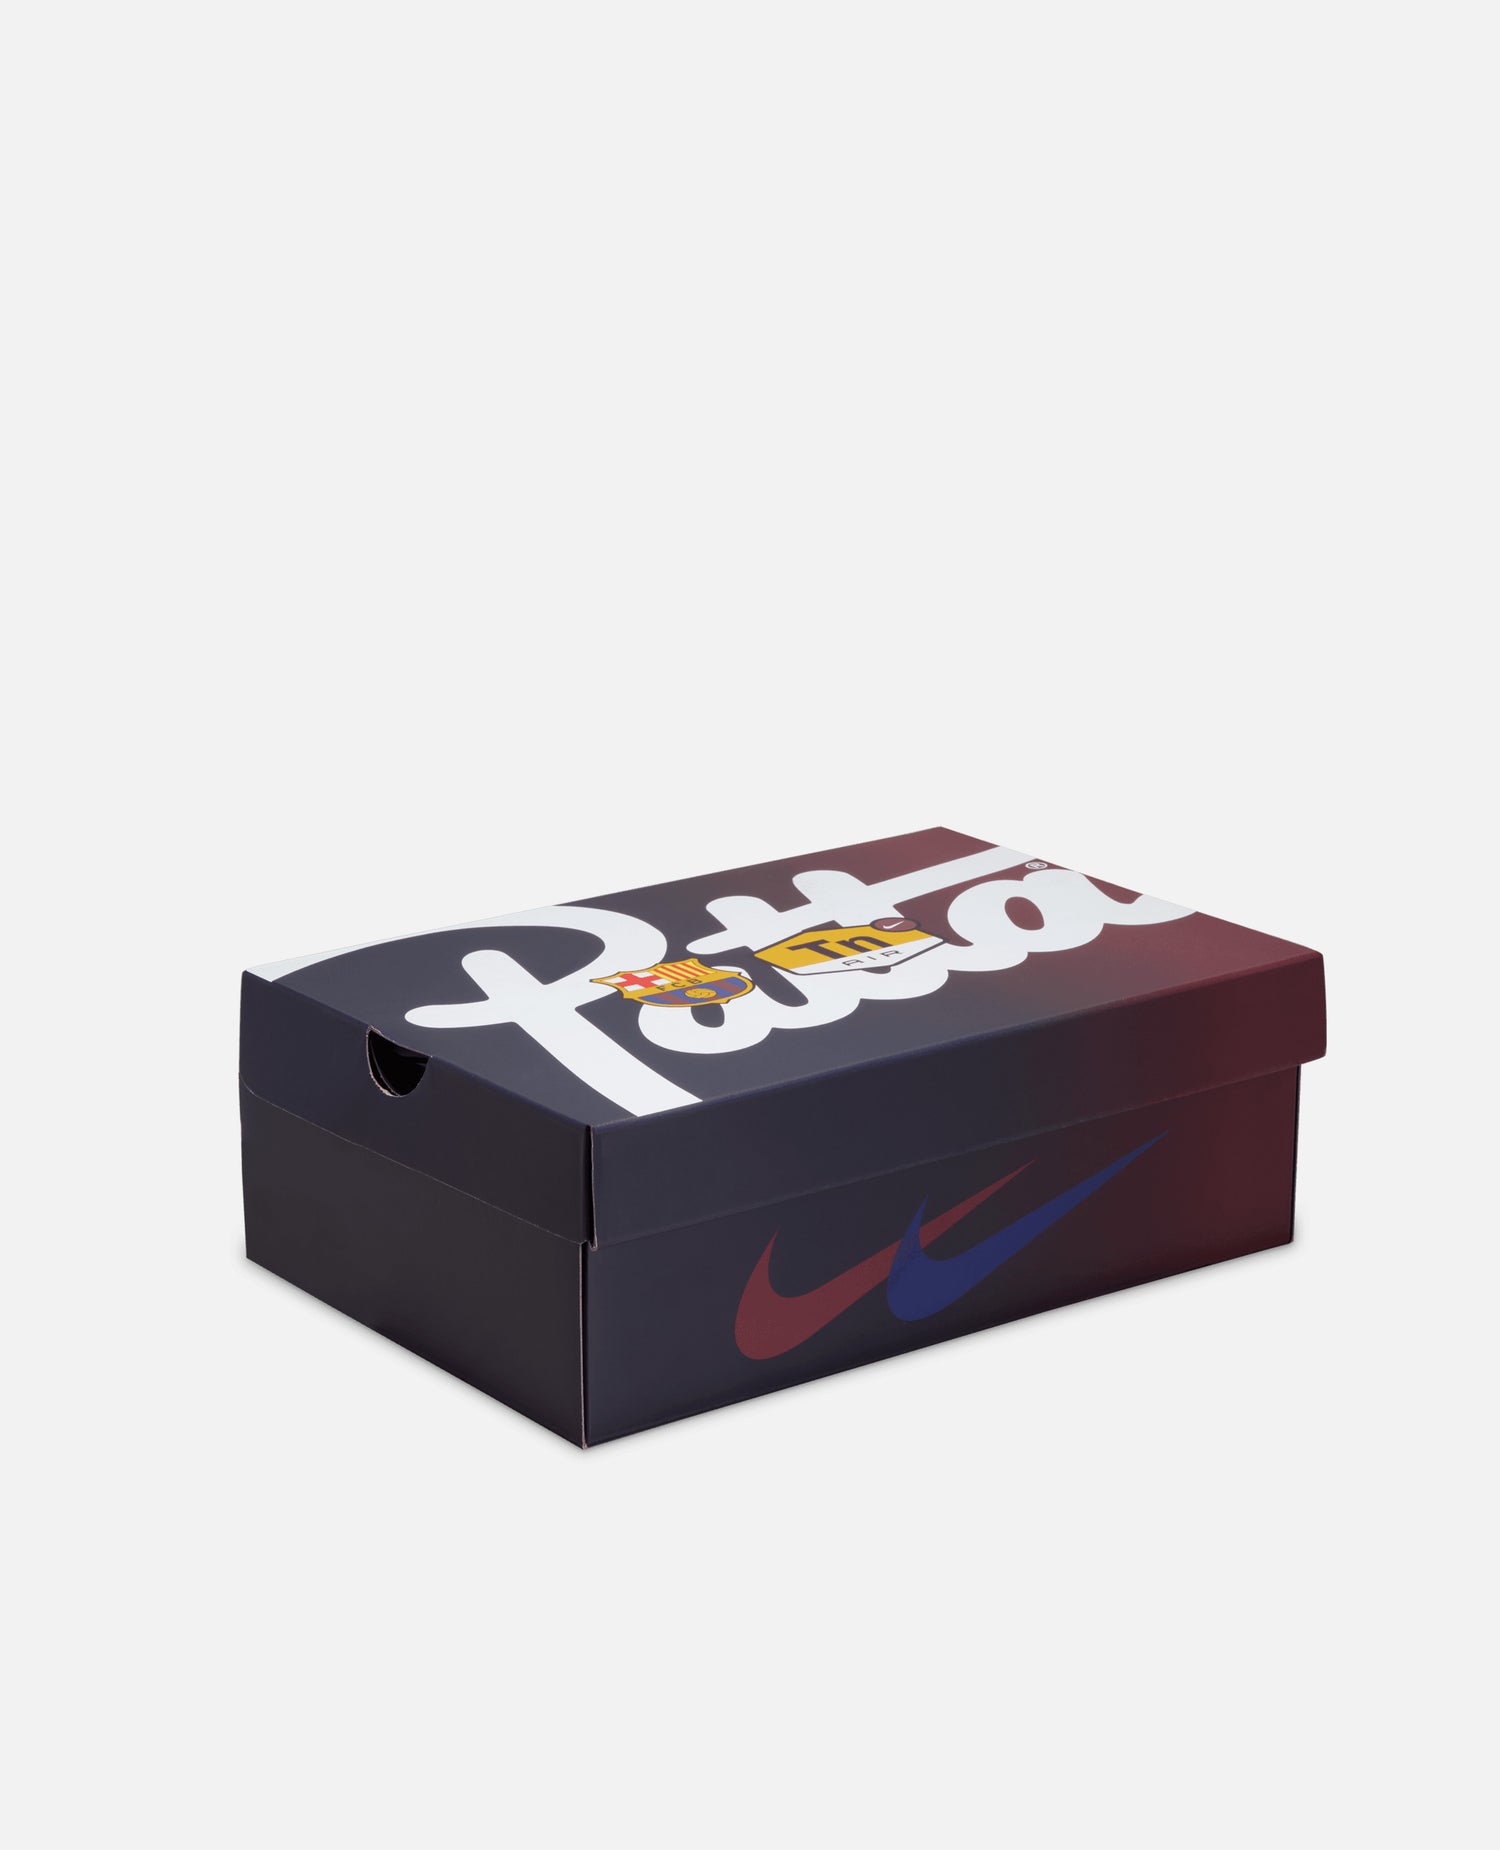 FCB x Patta Culers del Món Nike Air Max Plus (Nero/Rosso nobile-Blu reale profondo)